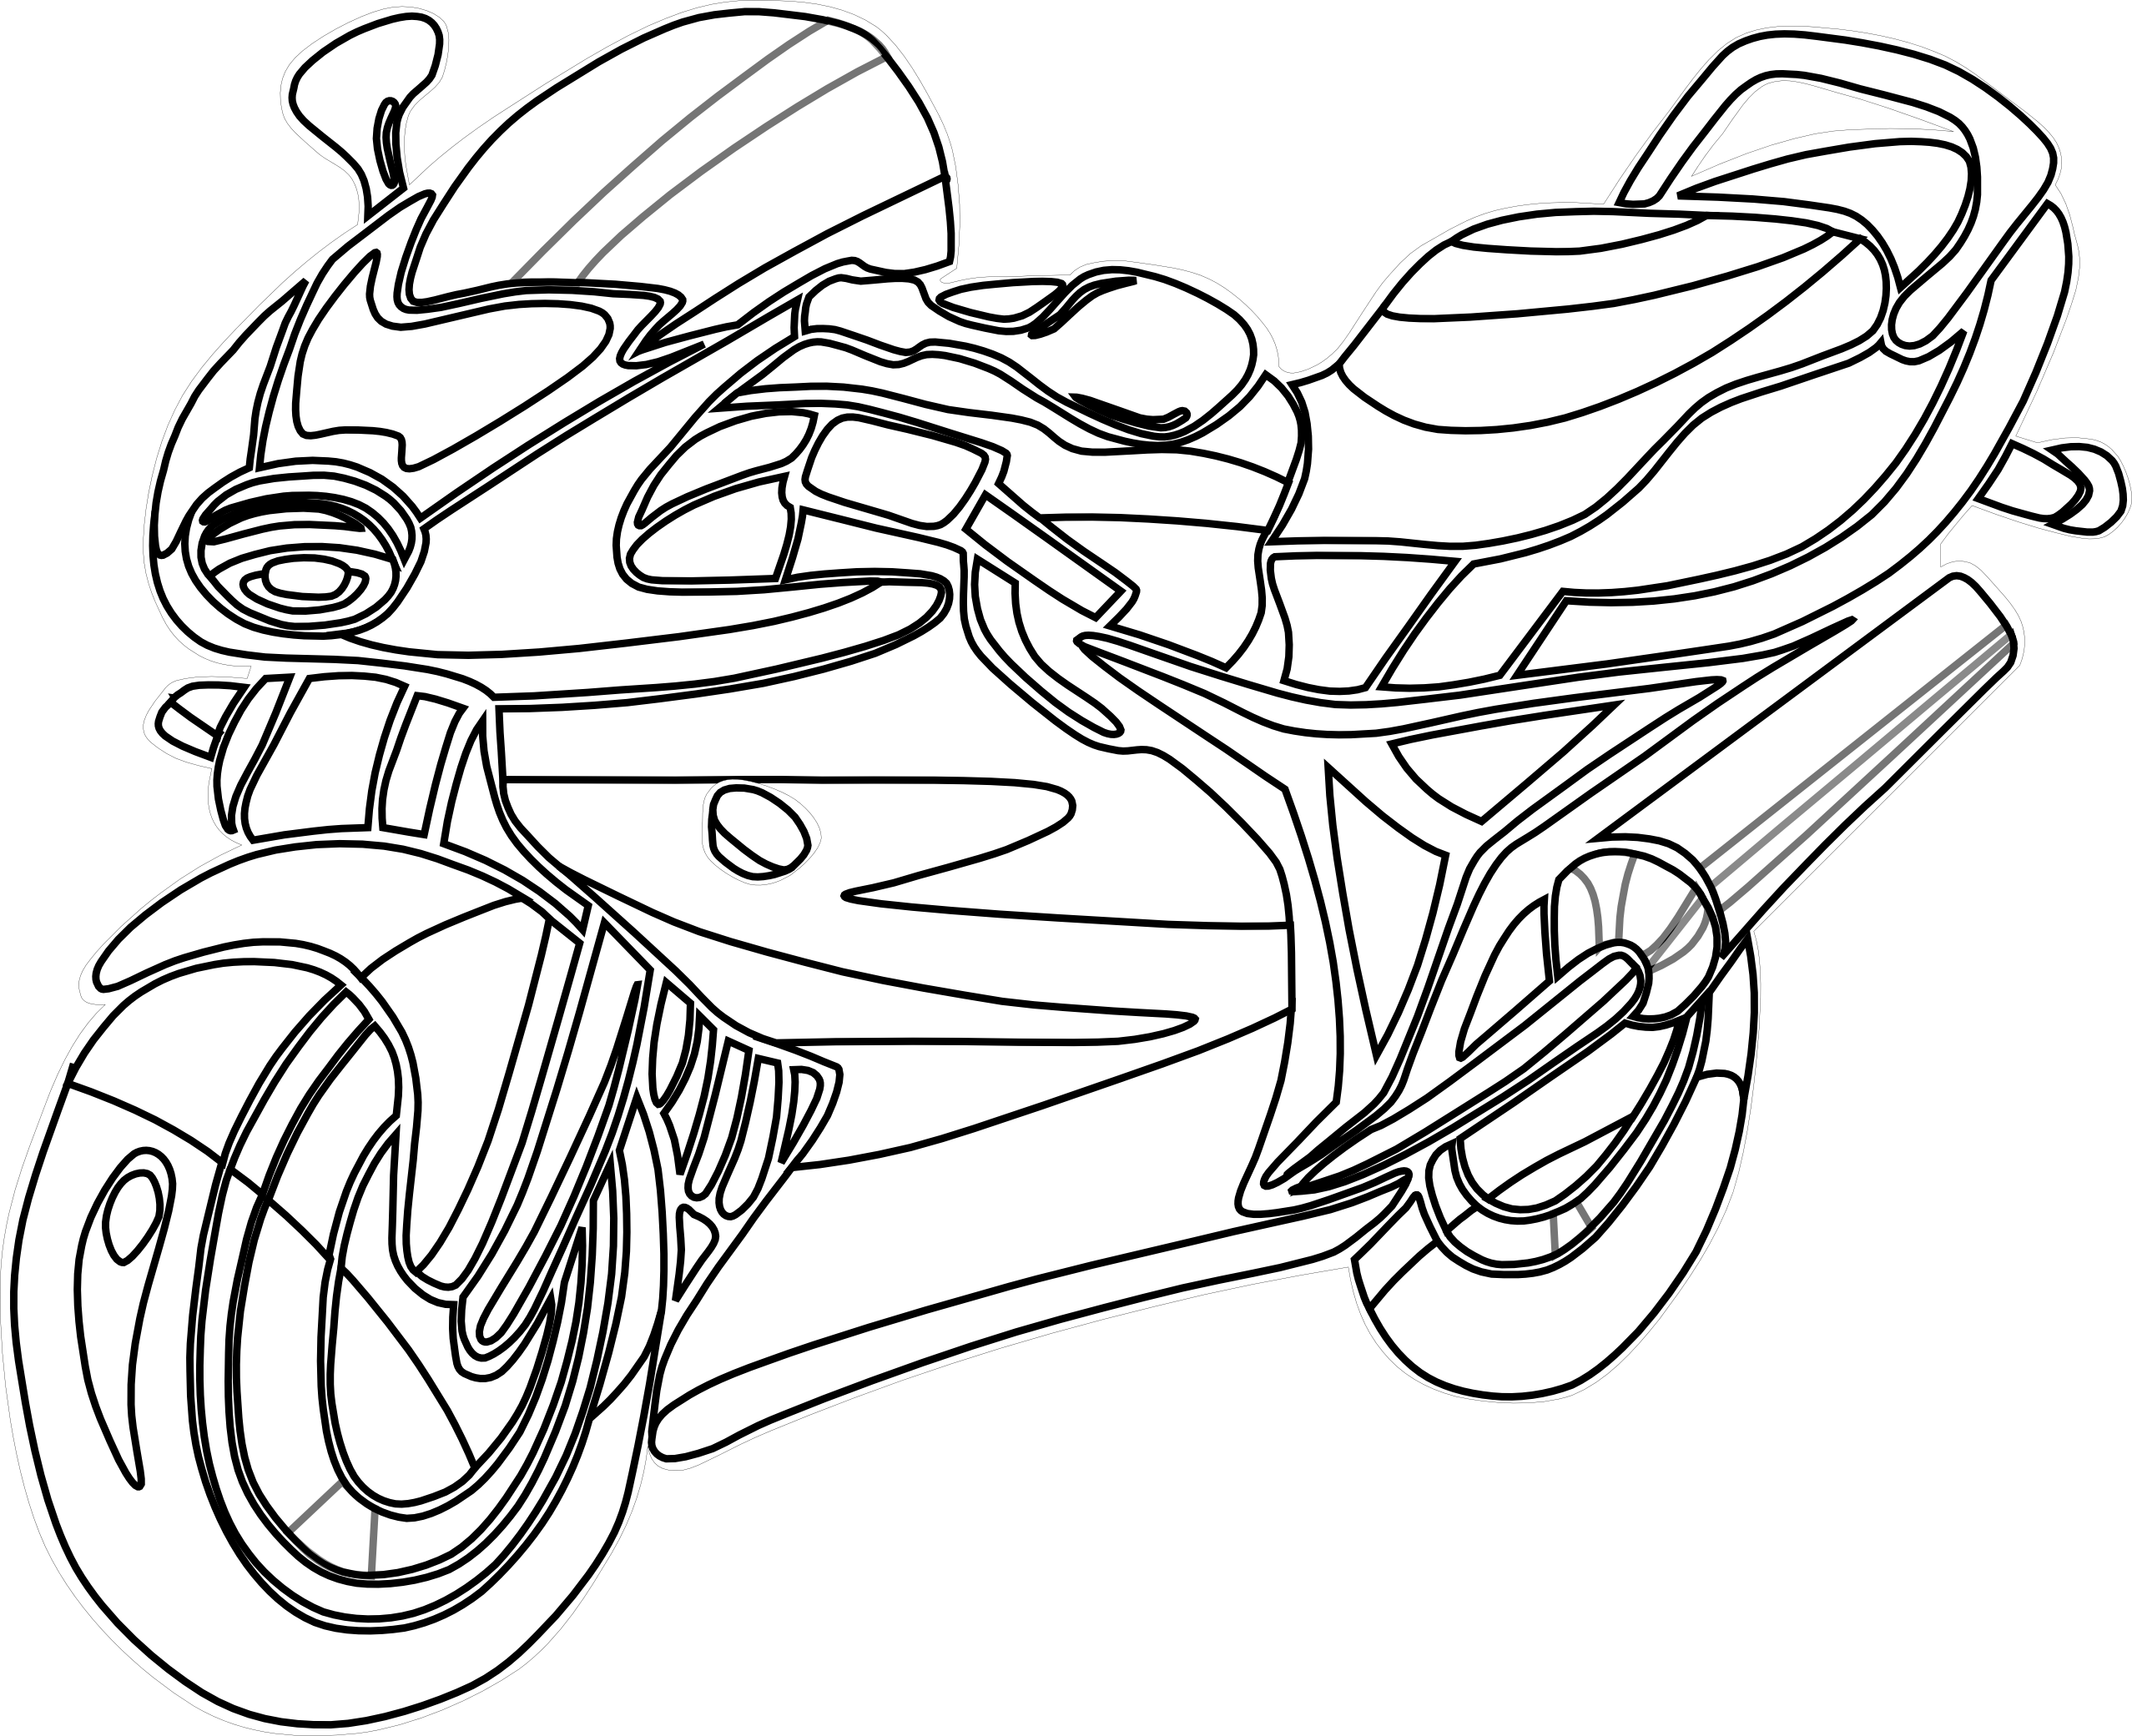 Motorcycle Vector Art 